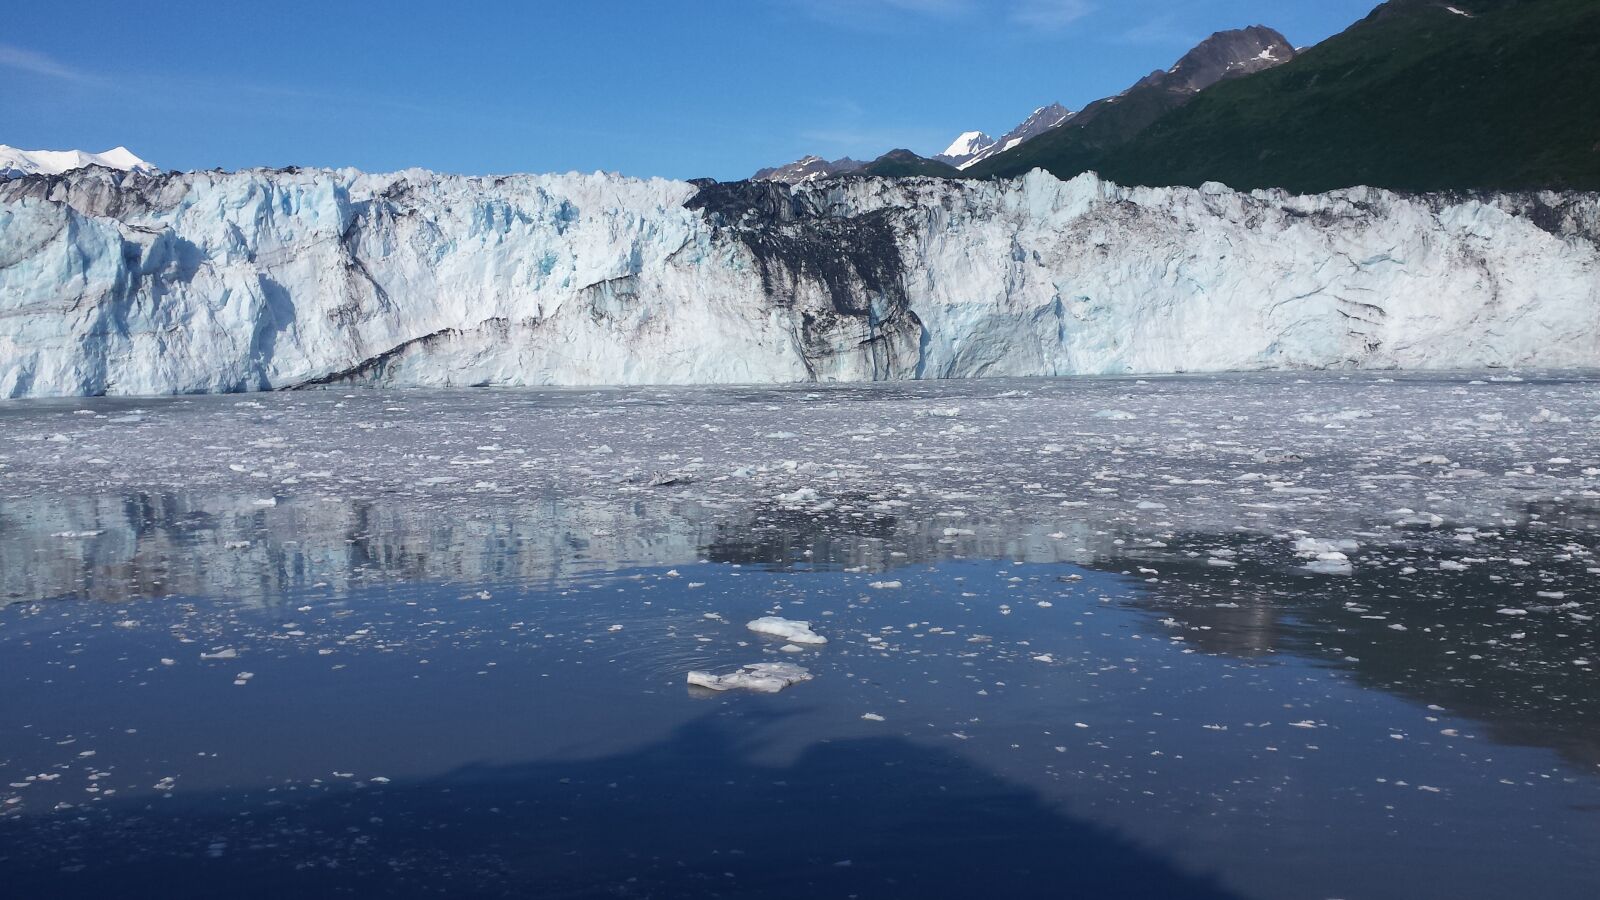 Samsung Galaxy S4 sample photo. Glacier, glacier bay, alaska photography